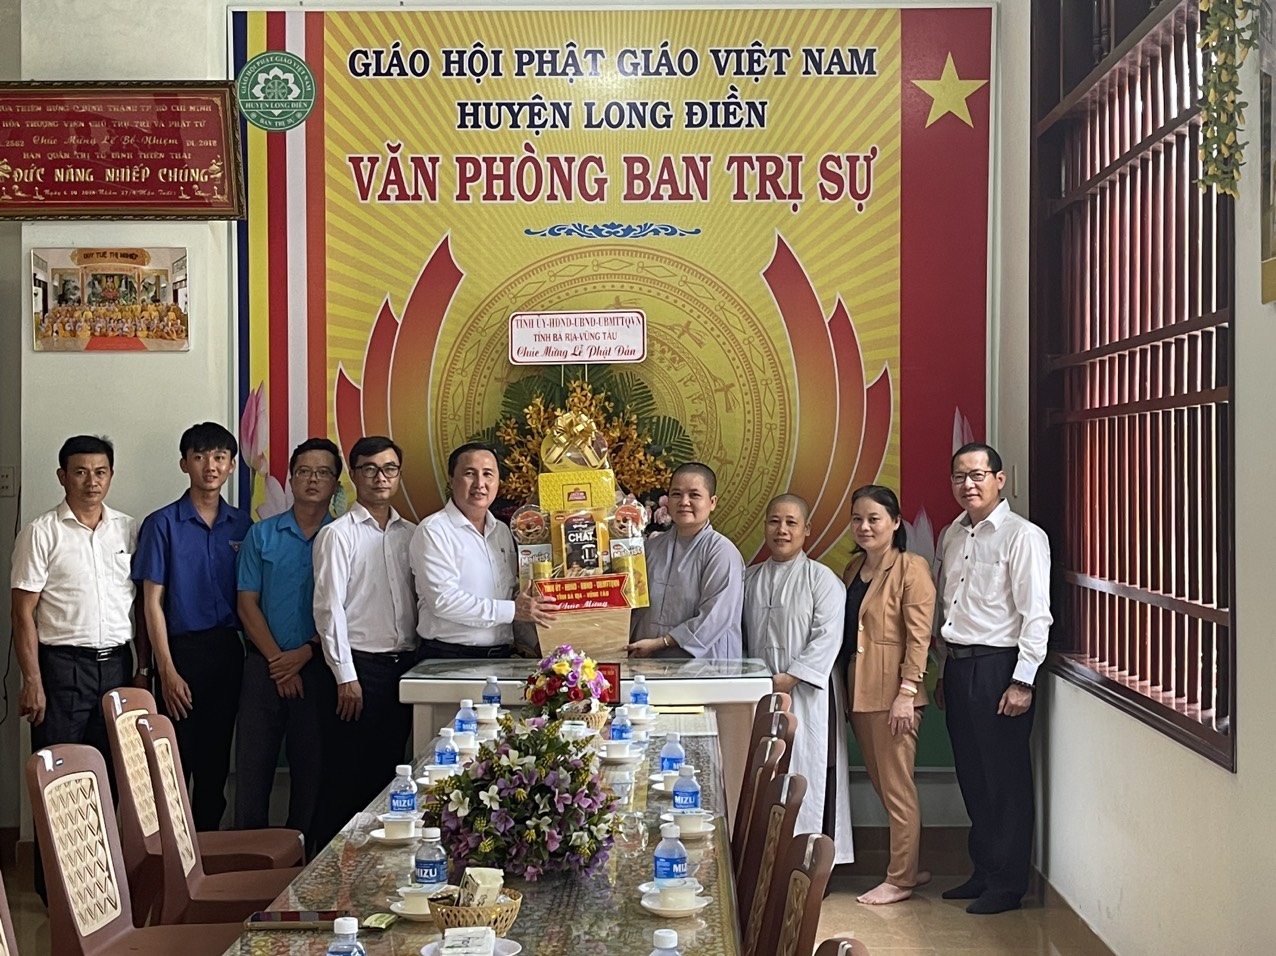 Chính quyền Tỉnh, Huyện thăm, chúc mừng Ban Trị sự GHPGVN huyện Long Điền nhân Đại lễ Phật đản PL.2568 - DL.2024